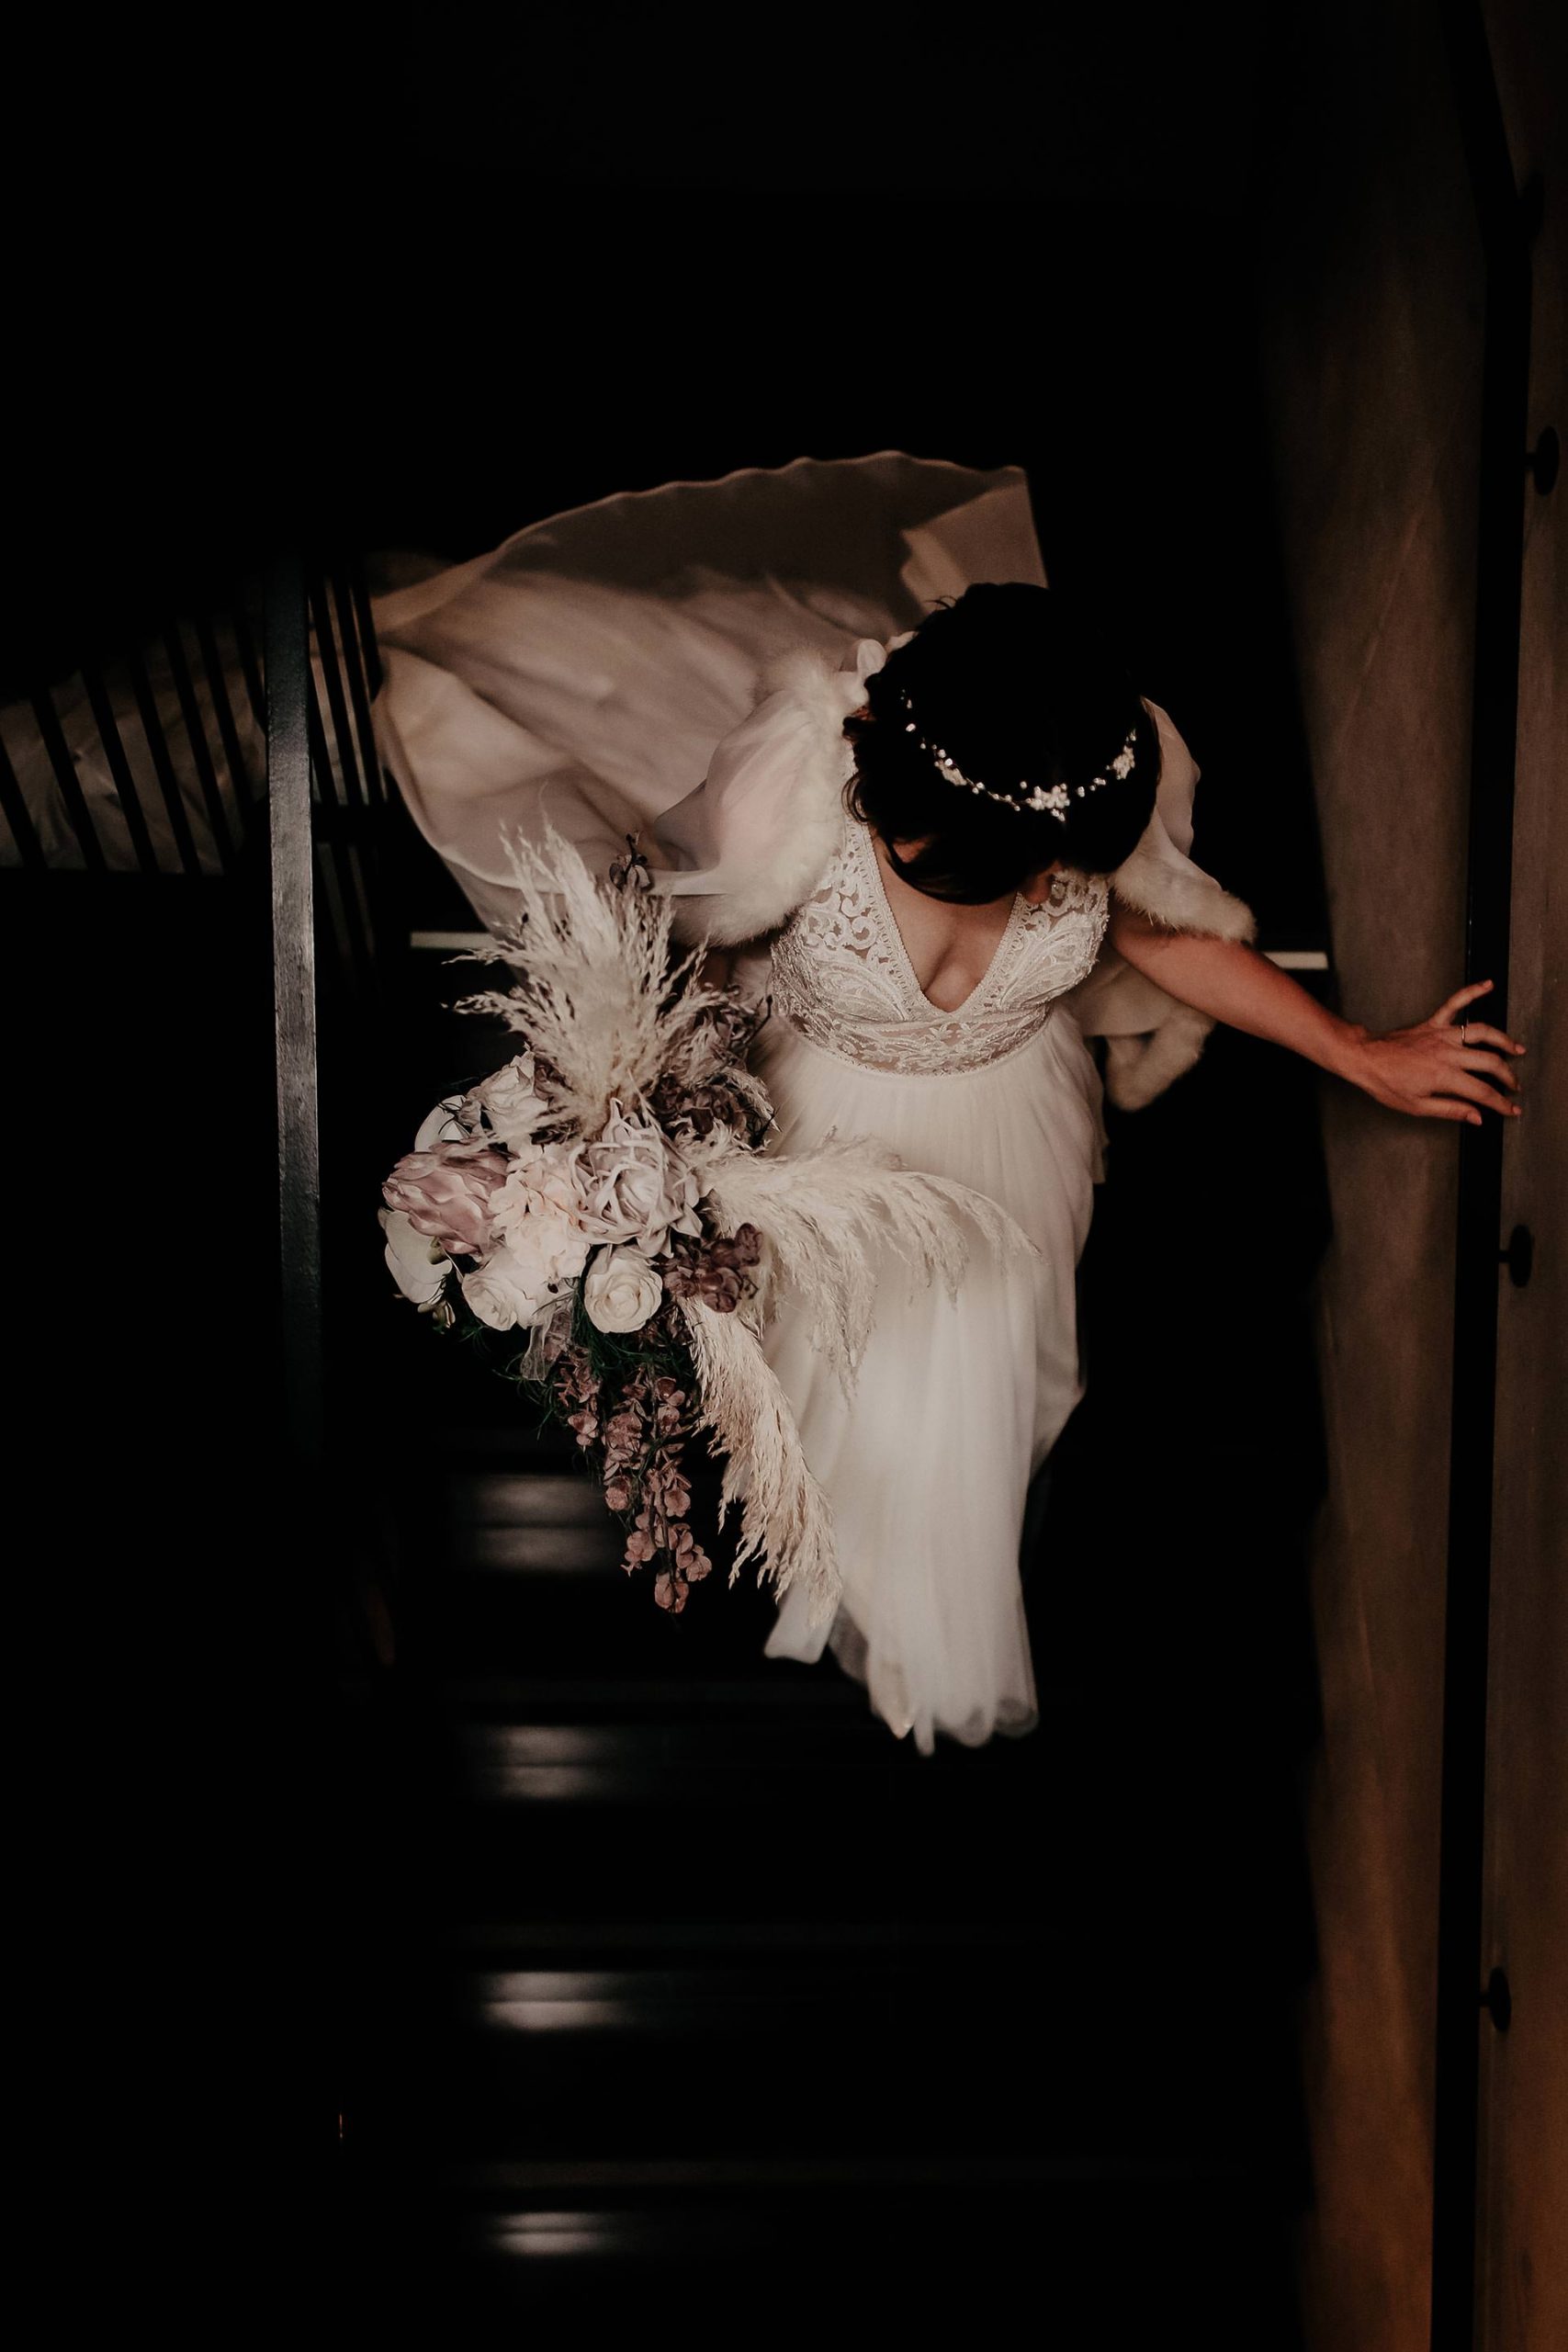 Am Blog gibt es etwas Neues zu unserer Herbsthochzeit. Ich zeige dir mein Brautstyling mit dem für mich perfekten Hochzeitskleid, Braut-Frisur und Make-up. Mehr auf www.whoismocca.com #hochzeit #traumhochzeit #pronovias #brautkleid #brautstyling